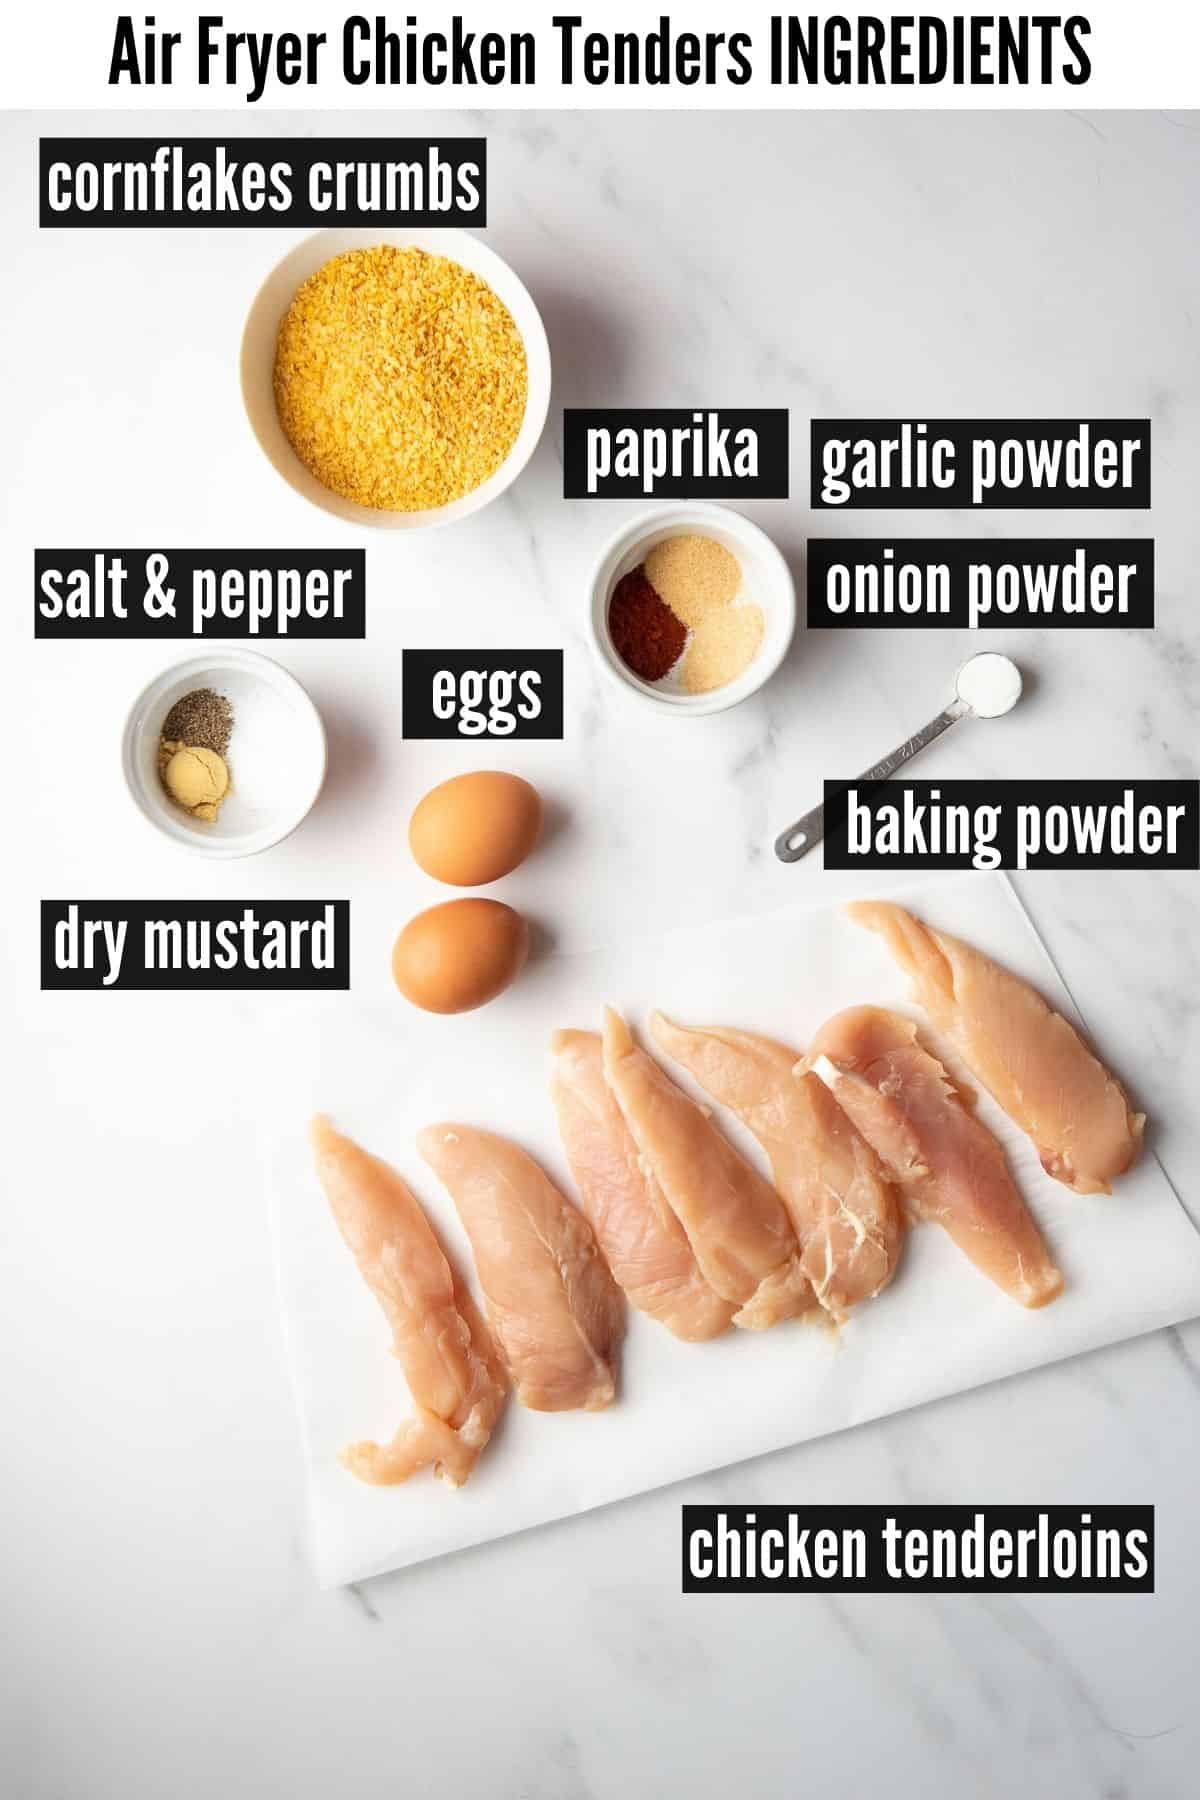 air fryer chicken tenders ingredients labelled